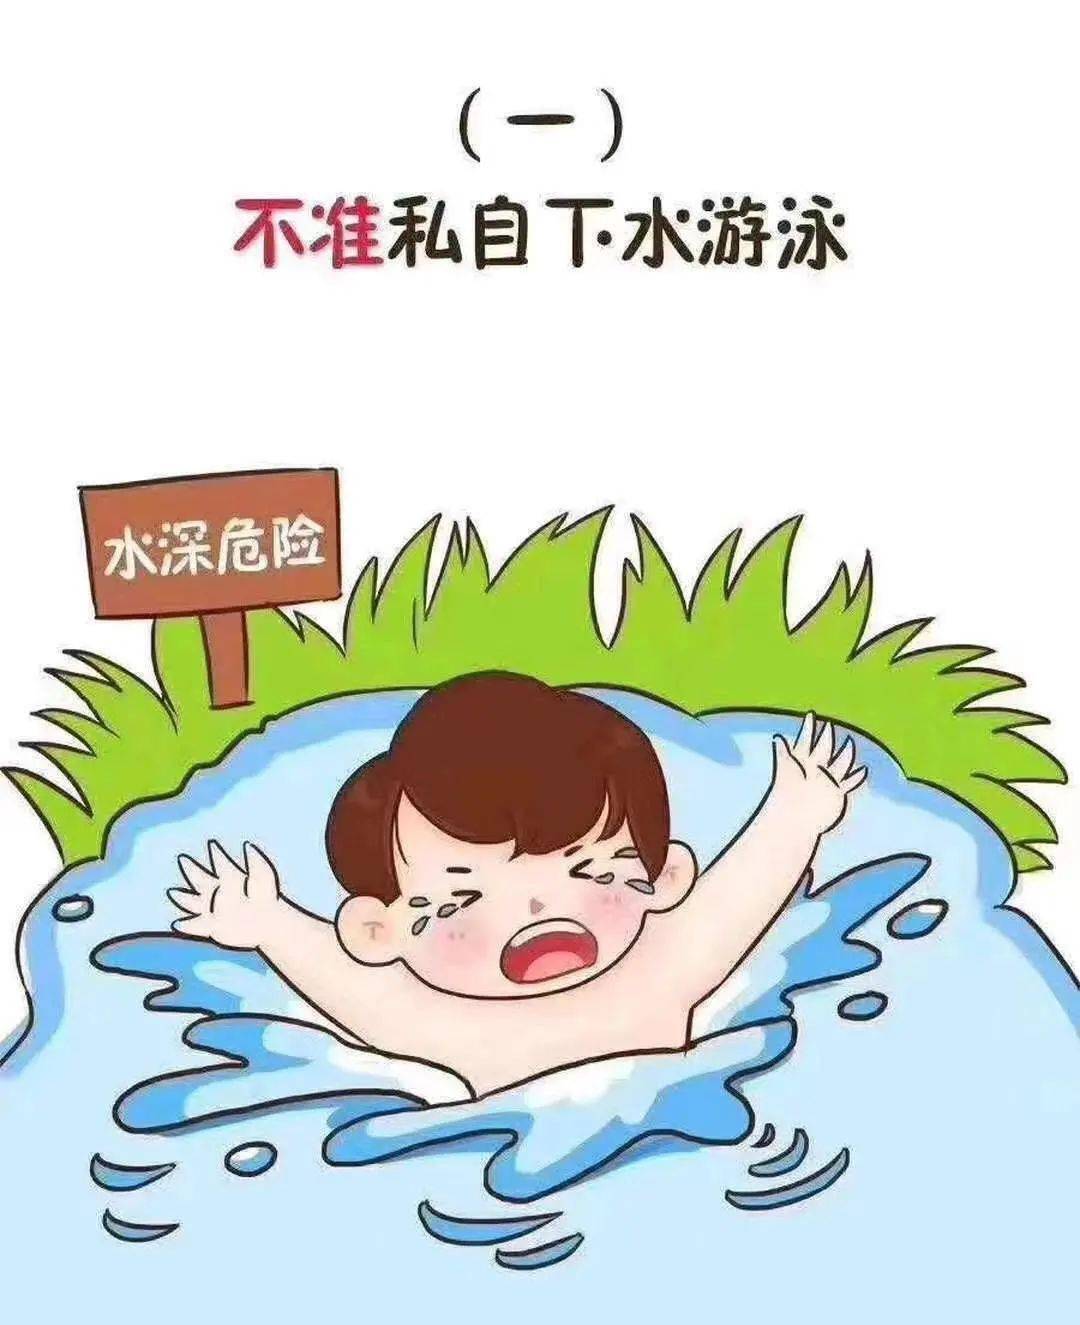 上海伊凡幼教合肥金色池塘幼儿园防溺水我们在行动预防溺水安全教育